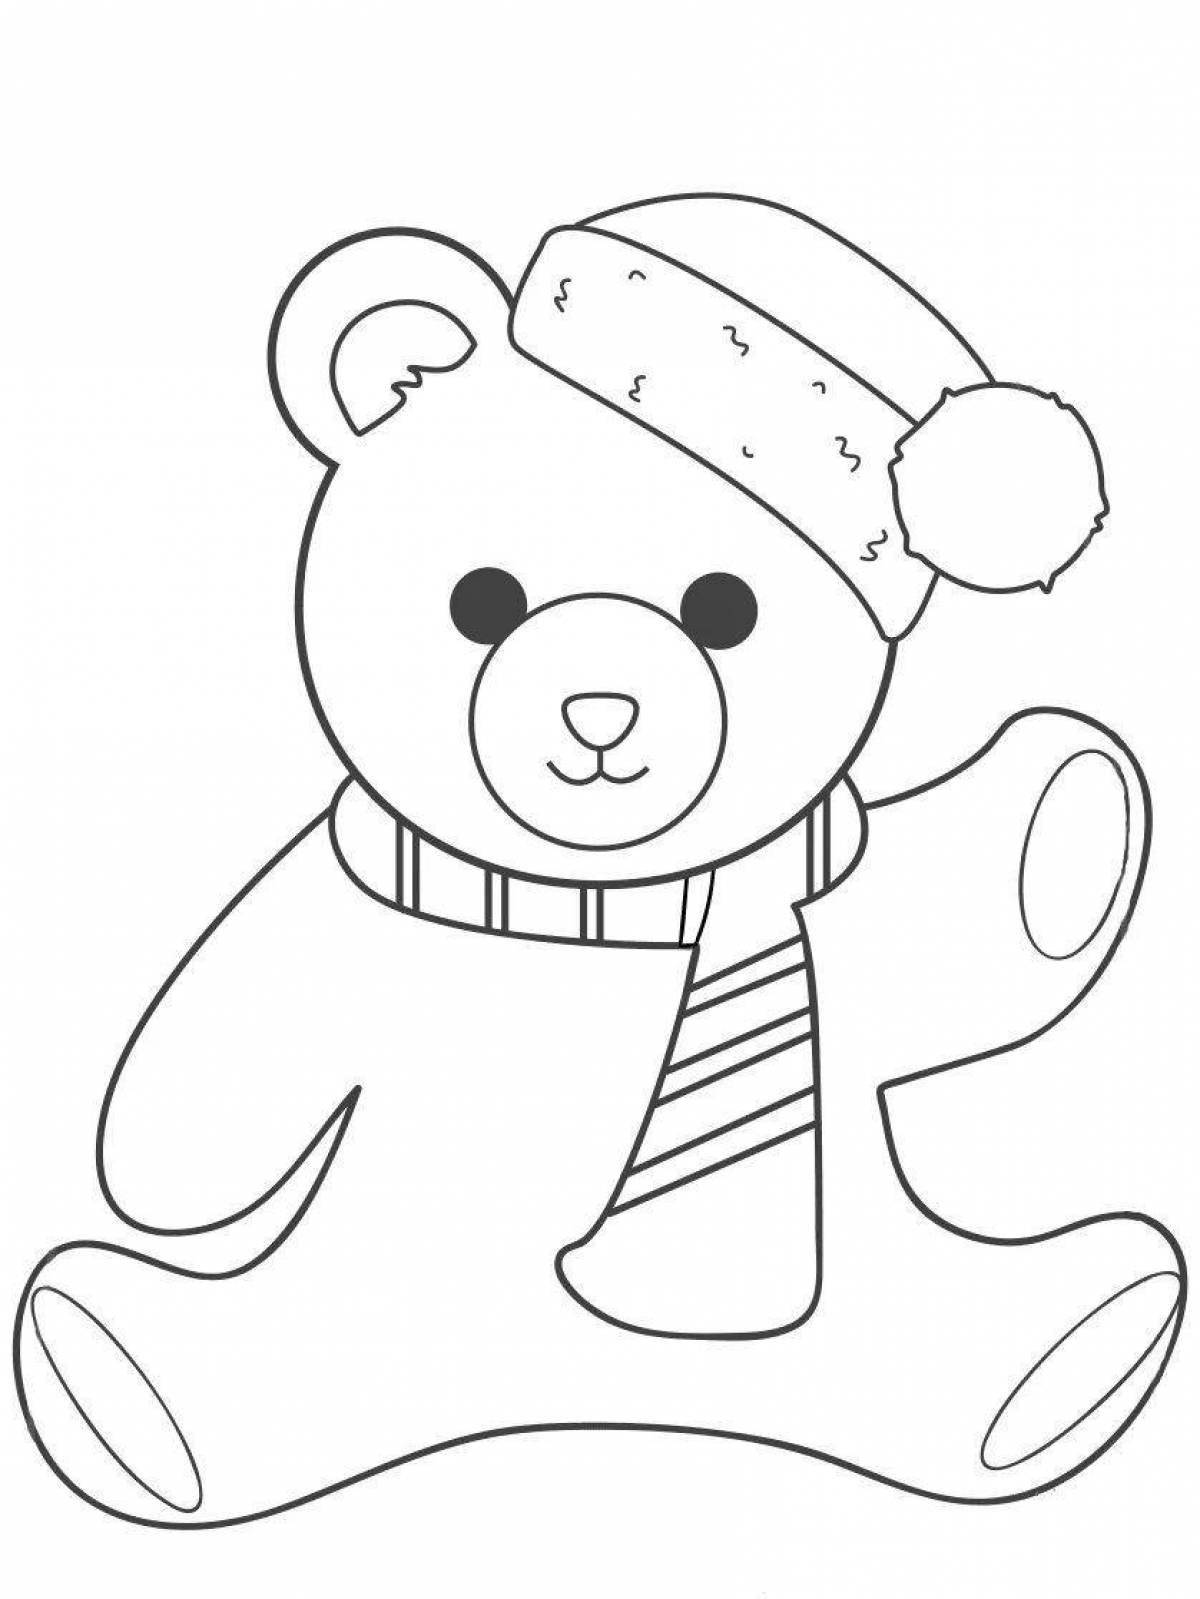 Coloring page cozy teddy bear